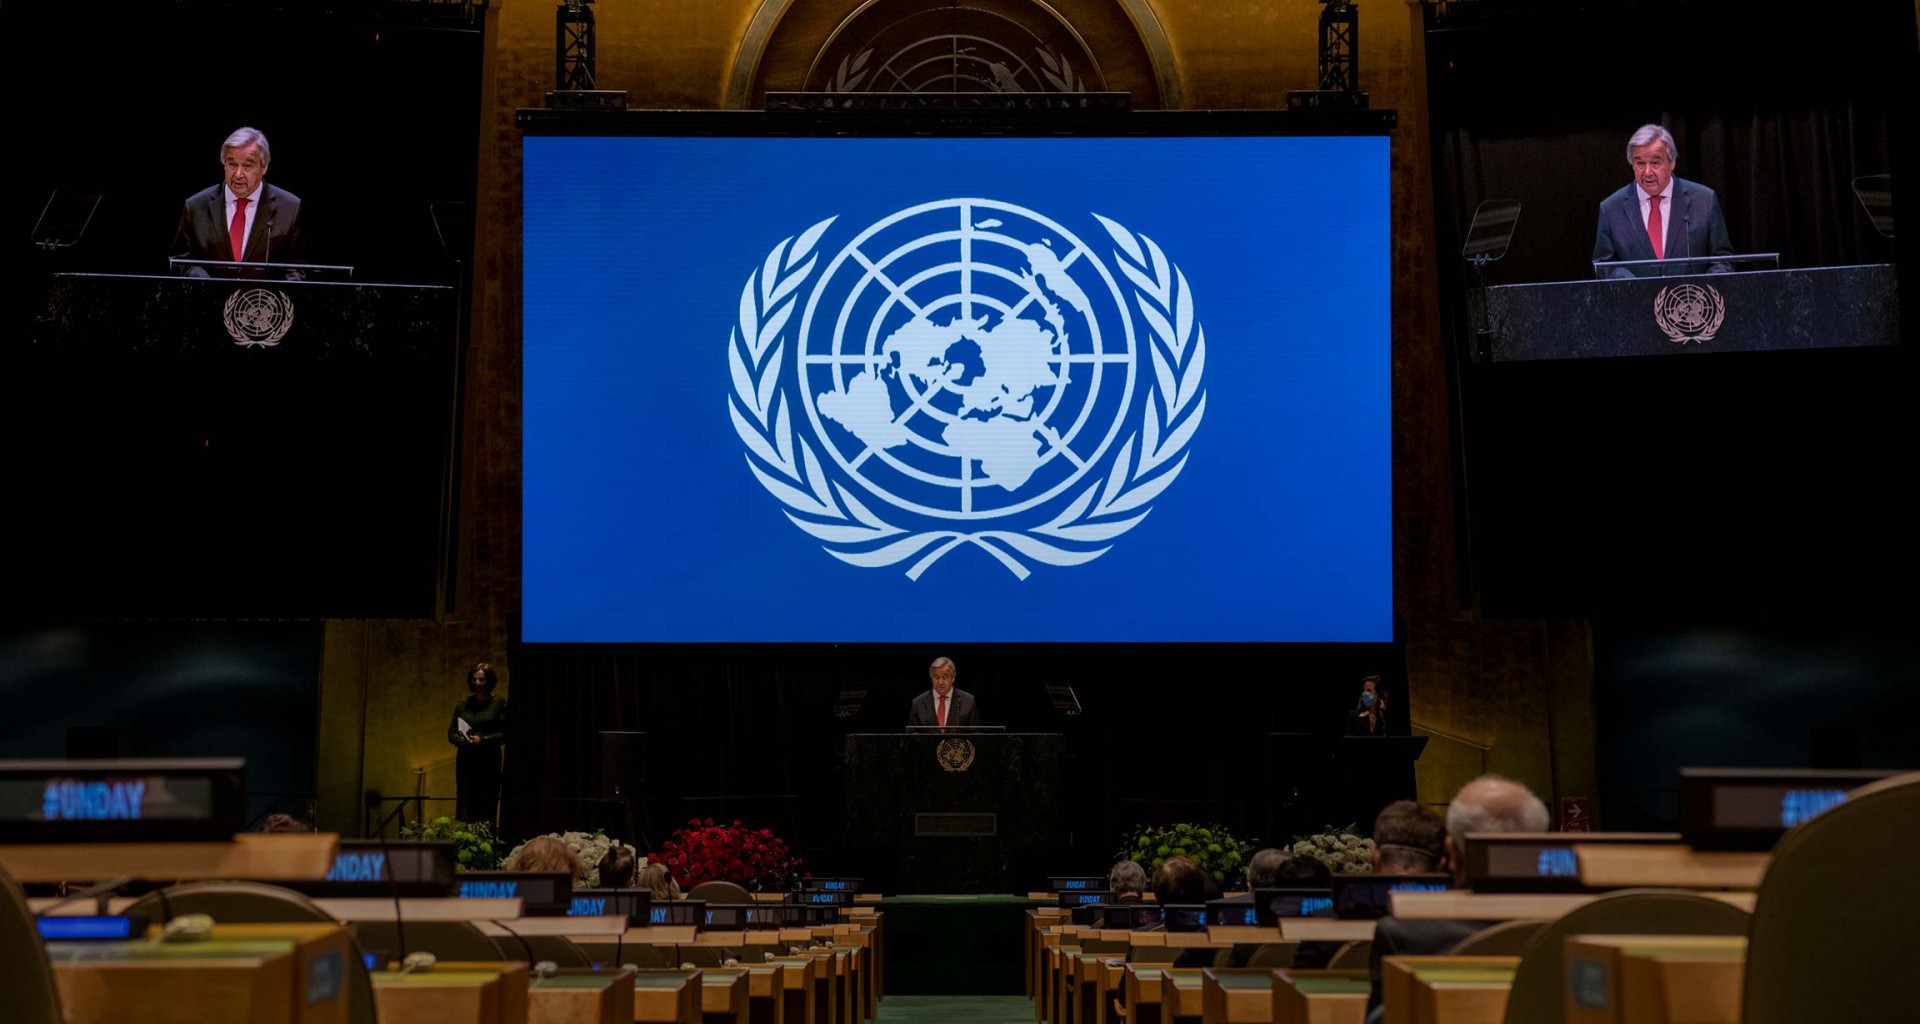 La cara oculta de la ONU [la operación de las Naciones Unidas para cambiar el mundo en el 2030]